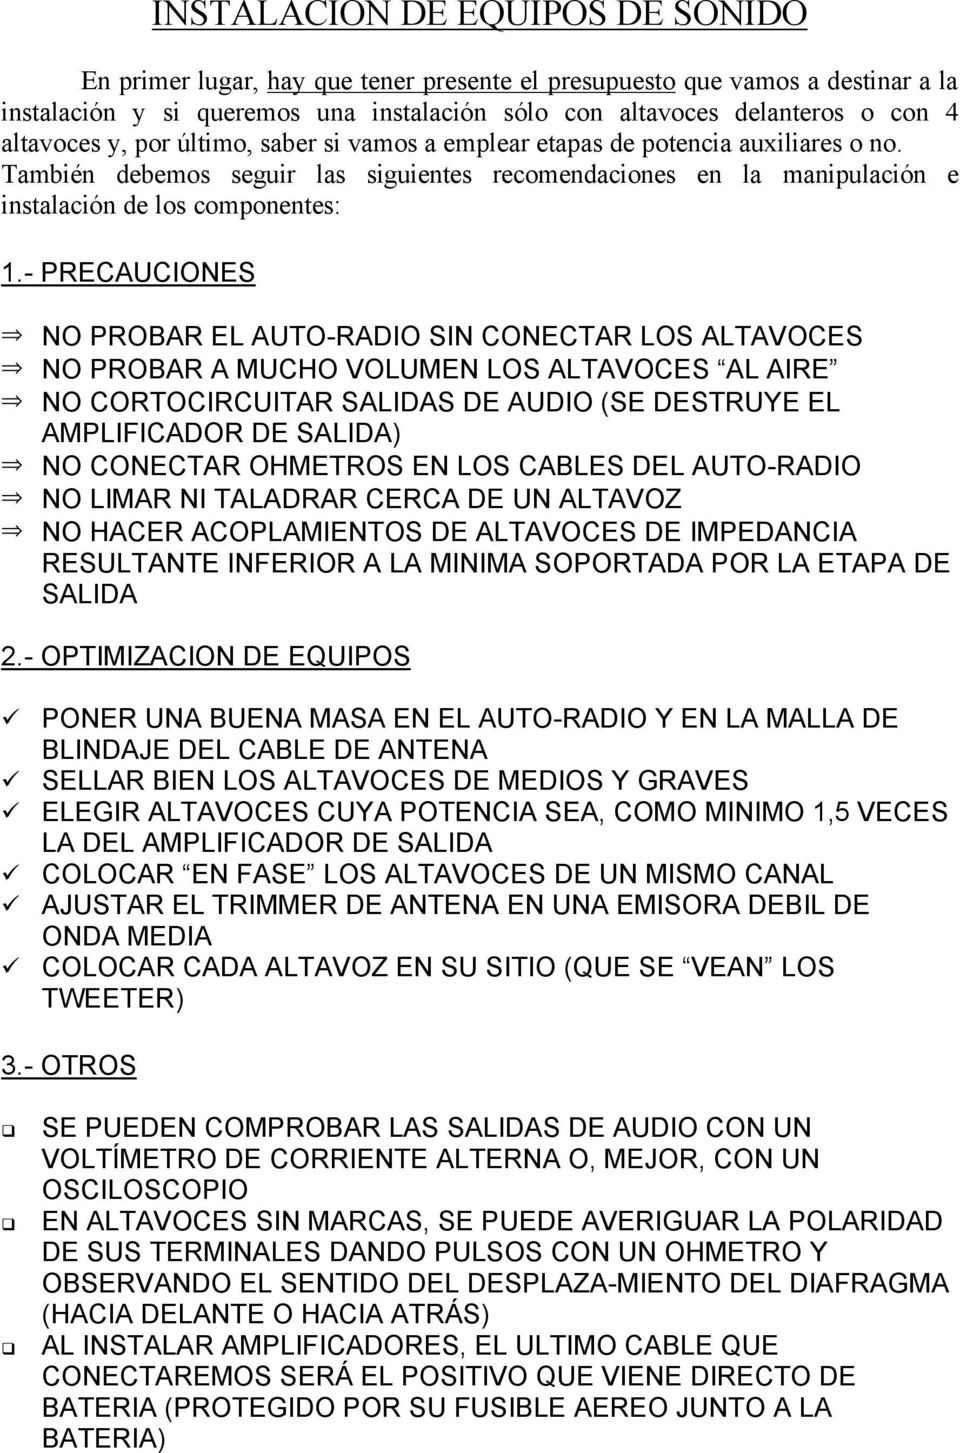 - PRECAUCIONES NO PROBAR EL AUTO-RADIO SIN CONECTAR LOS ALTAVOCES NO PROBAR A MUCHO VOLUMEN LOS ALTAVOCES AL AIRE NO CORTOCIRCUITAR SALIDAS DE AUDIO (SE DESTRUYE EL AMPLIFICADOR DE SALIDA) NO